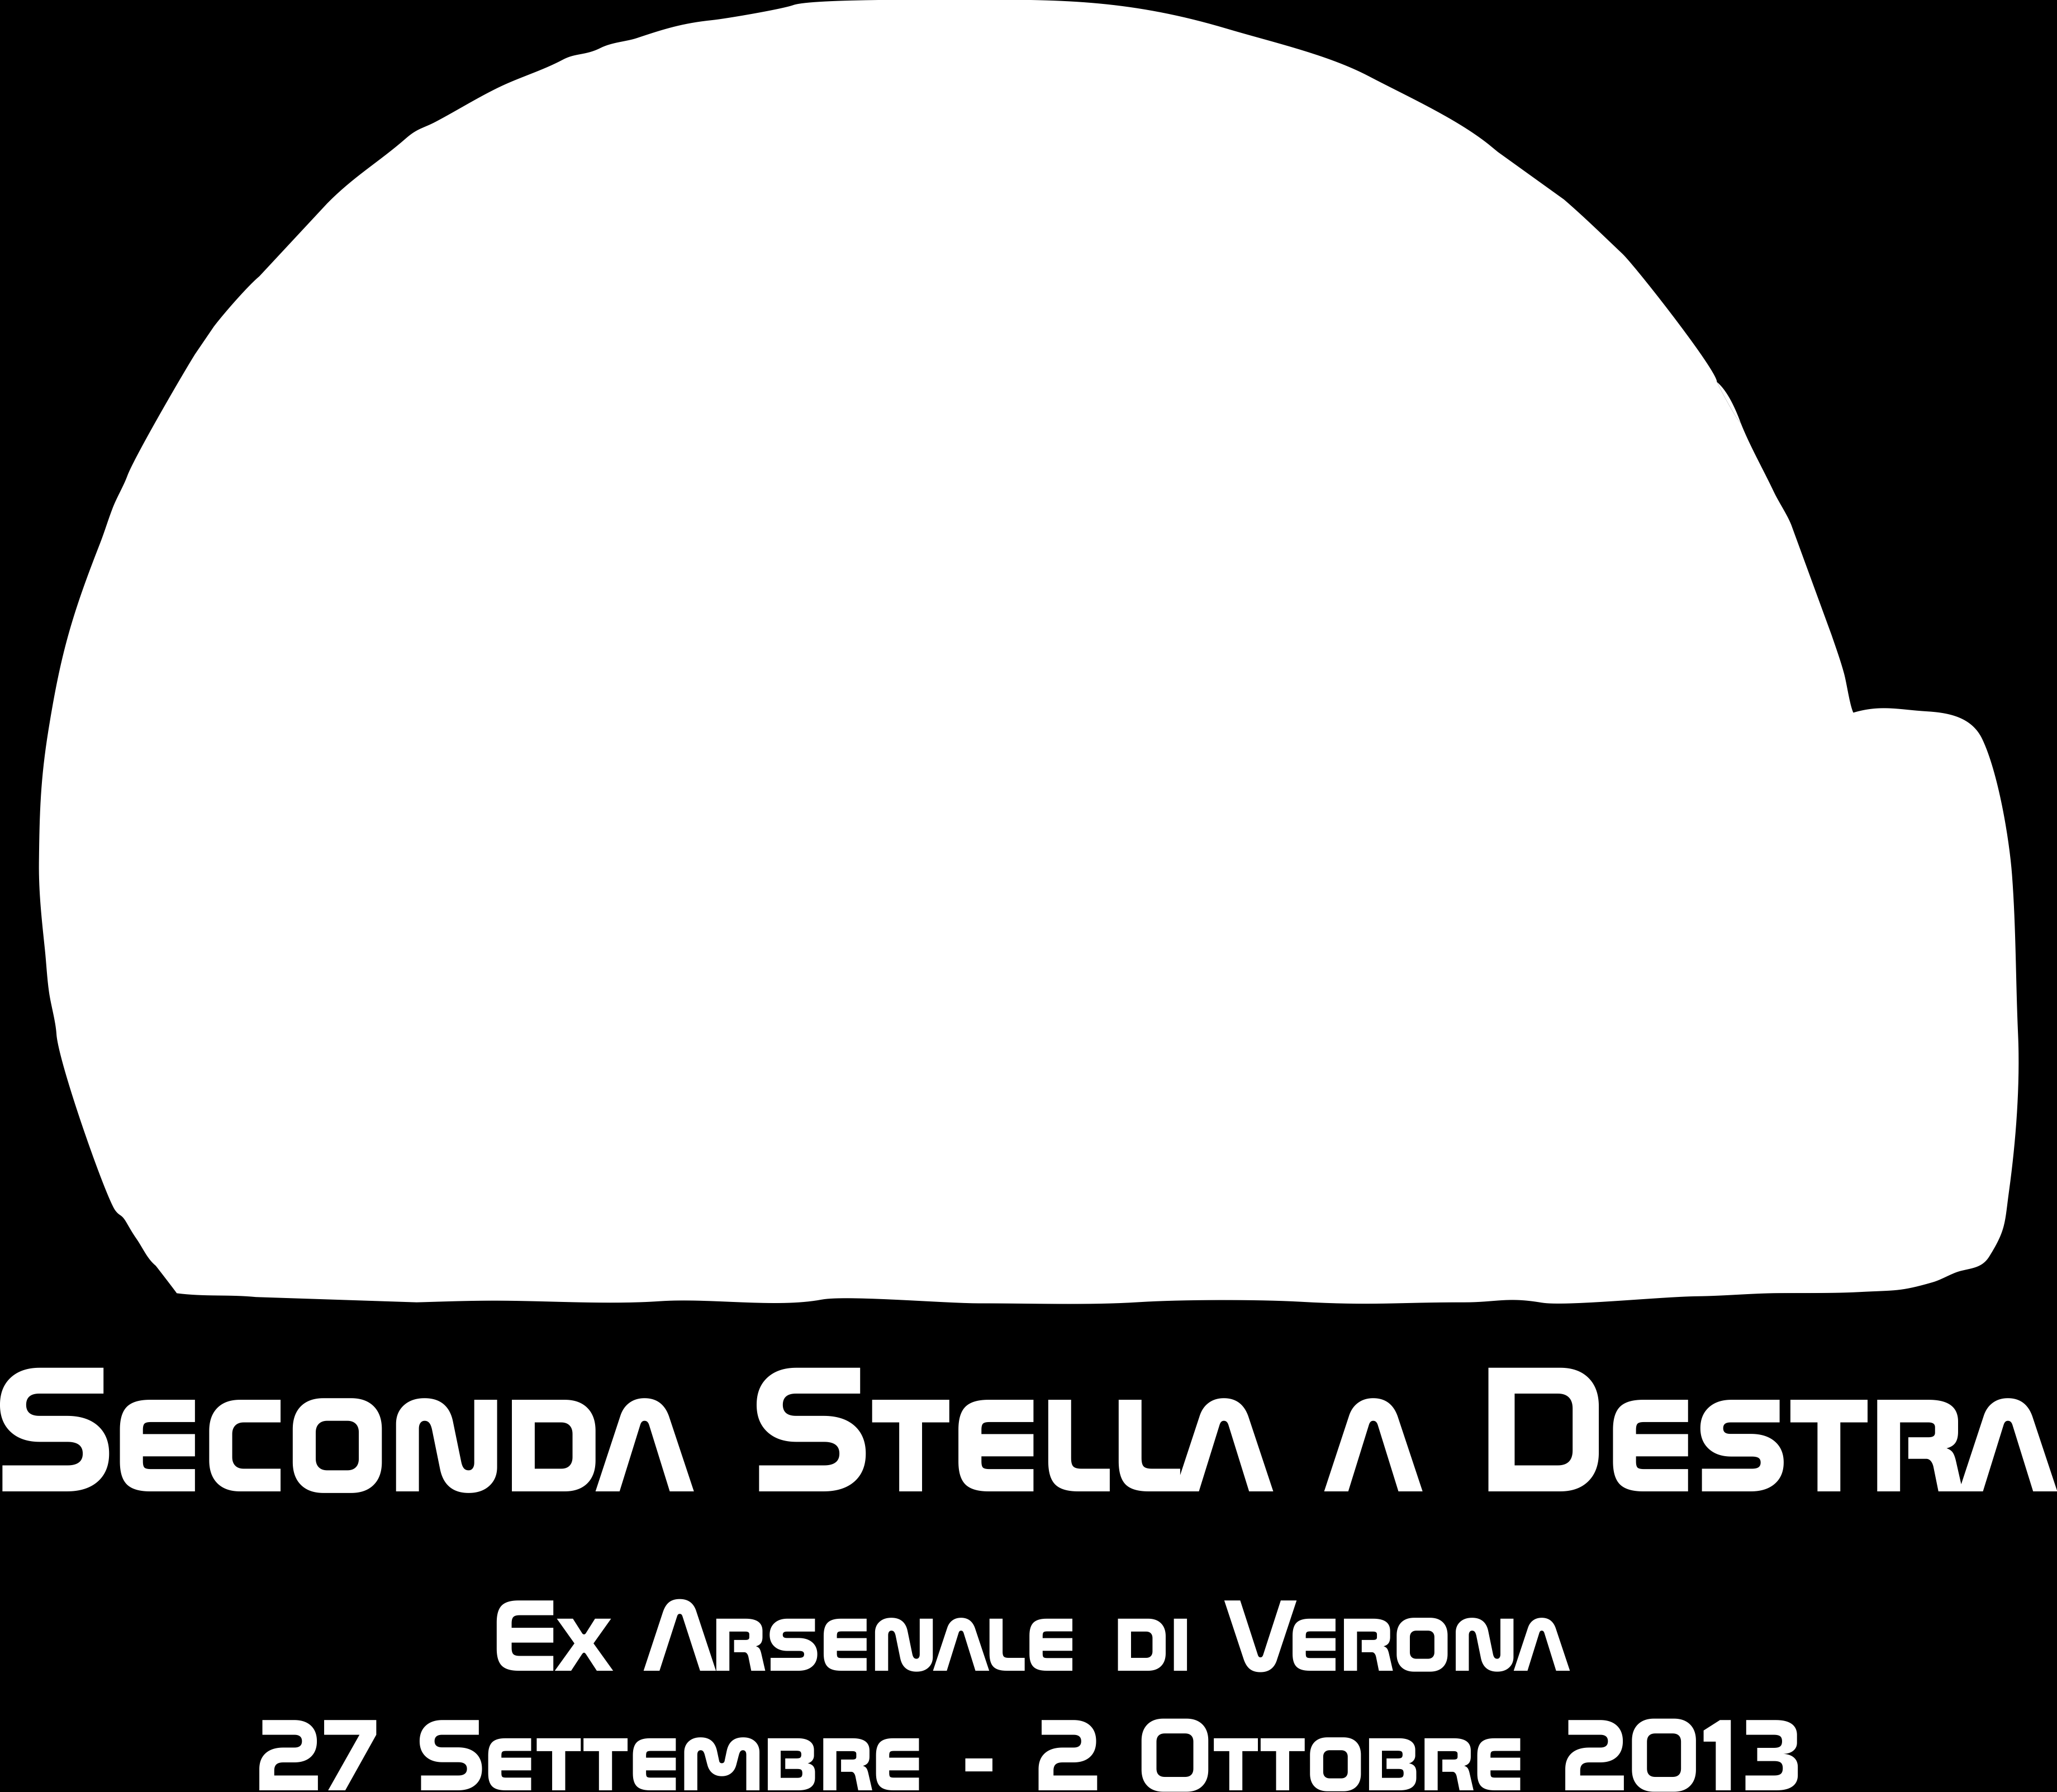 Oggetto: presentazione evento Seconda Stella a Destra seconda ezione si terrà dal 26 Settembre al 2 Ottobre 2014 presso l'ex-arsenale Verona Dopo il successo dello scorso anno, ha visto la